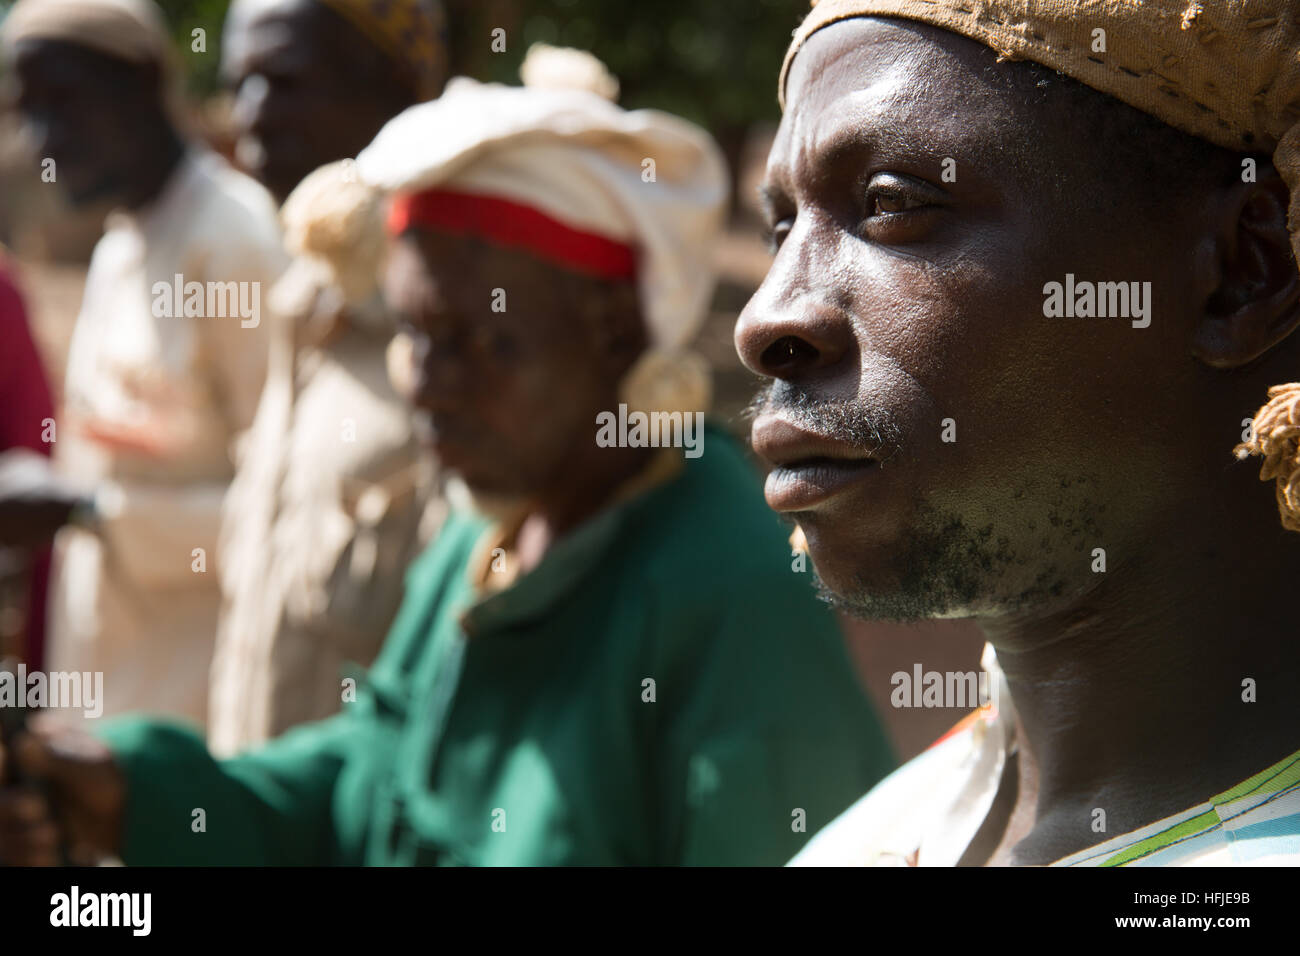 Gbderedou Baranama, Guinea, el 2 de mayo de 2015; un grupo de cazadores de la aldea con sus pistolas. Cazan en el bosque cada día. Foto de stock